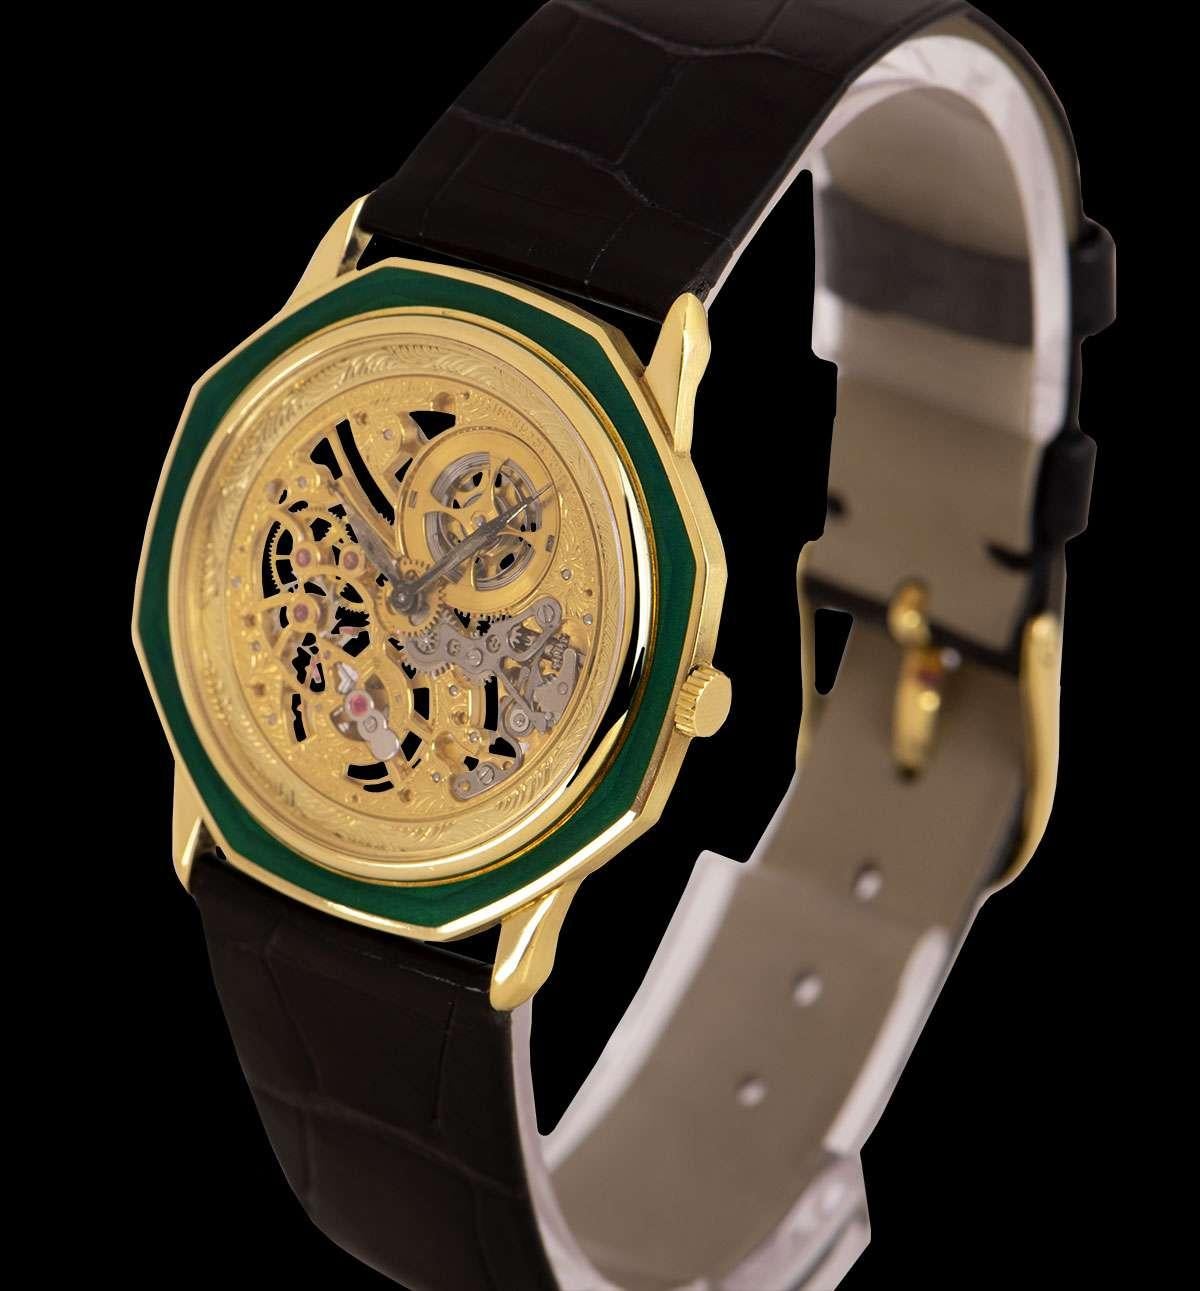 octagonal dial watch